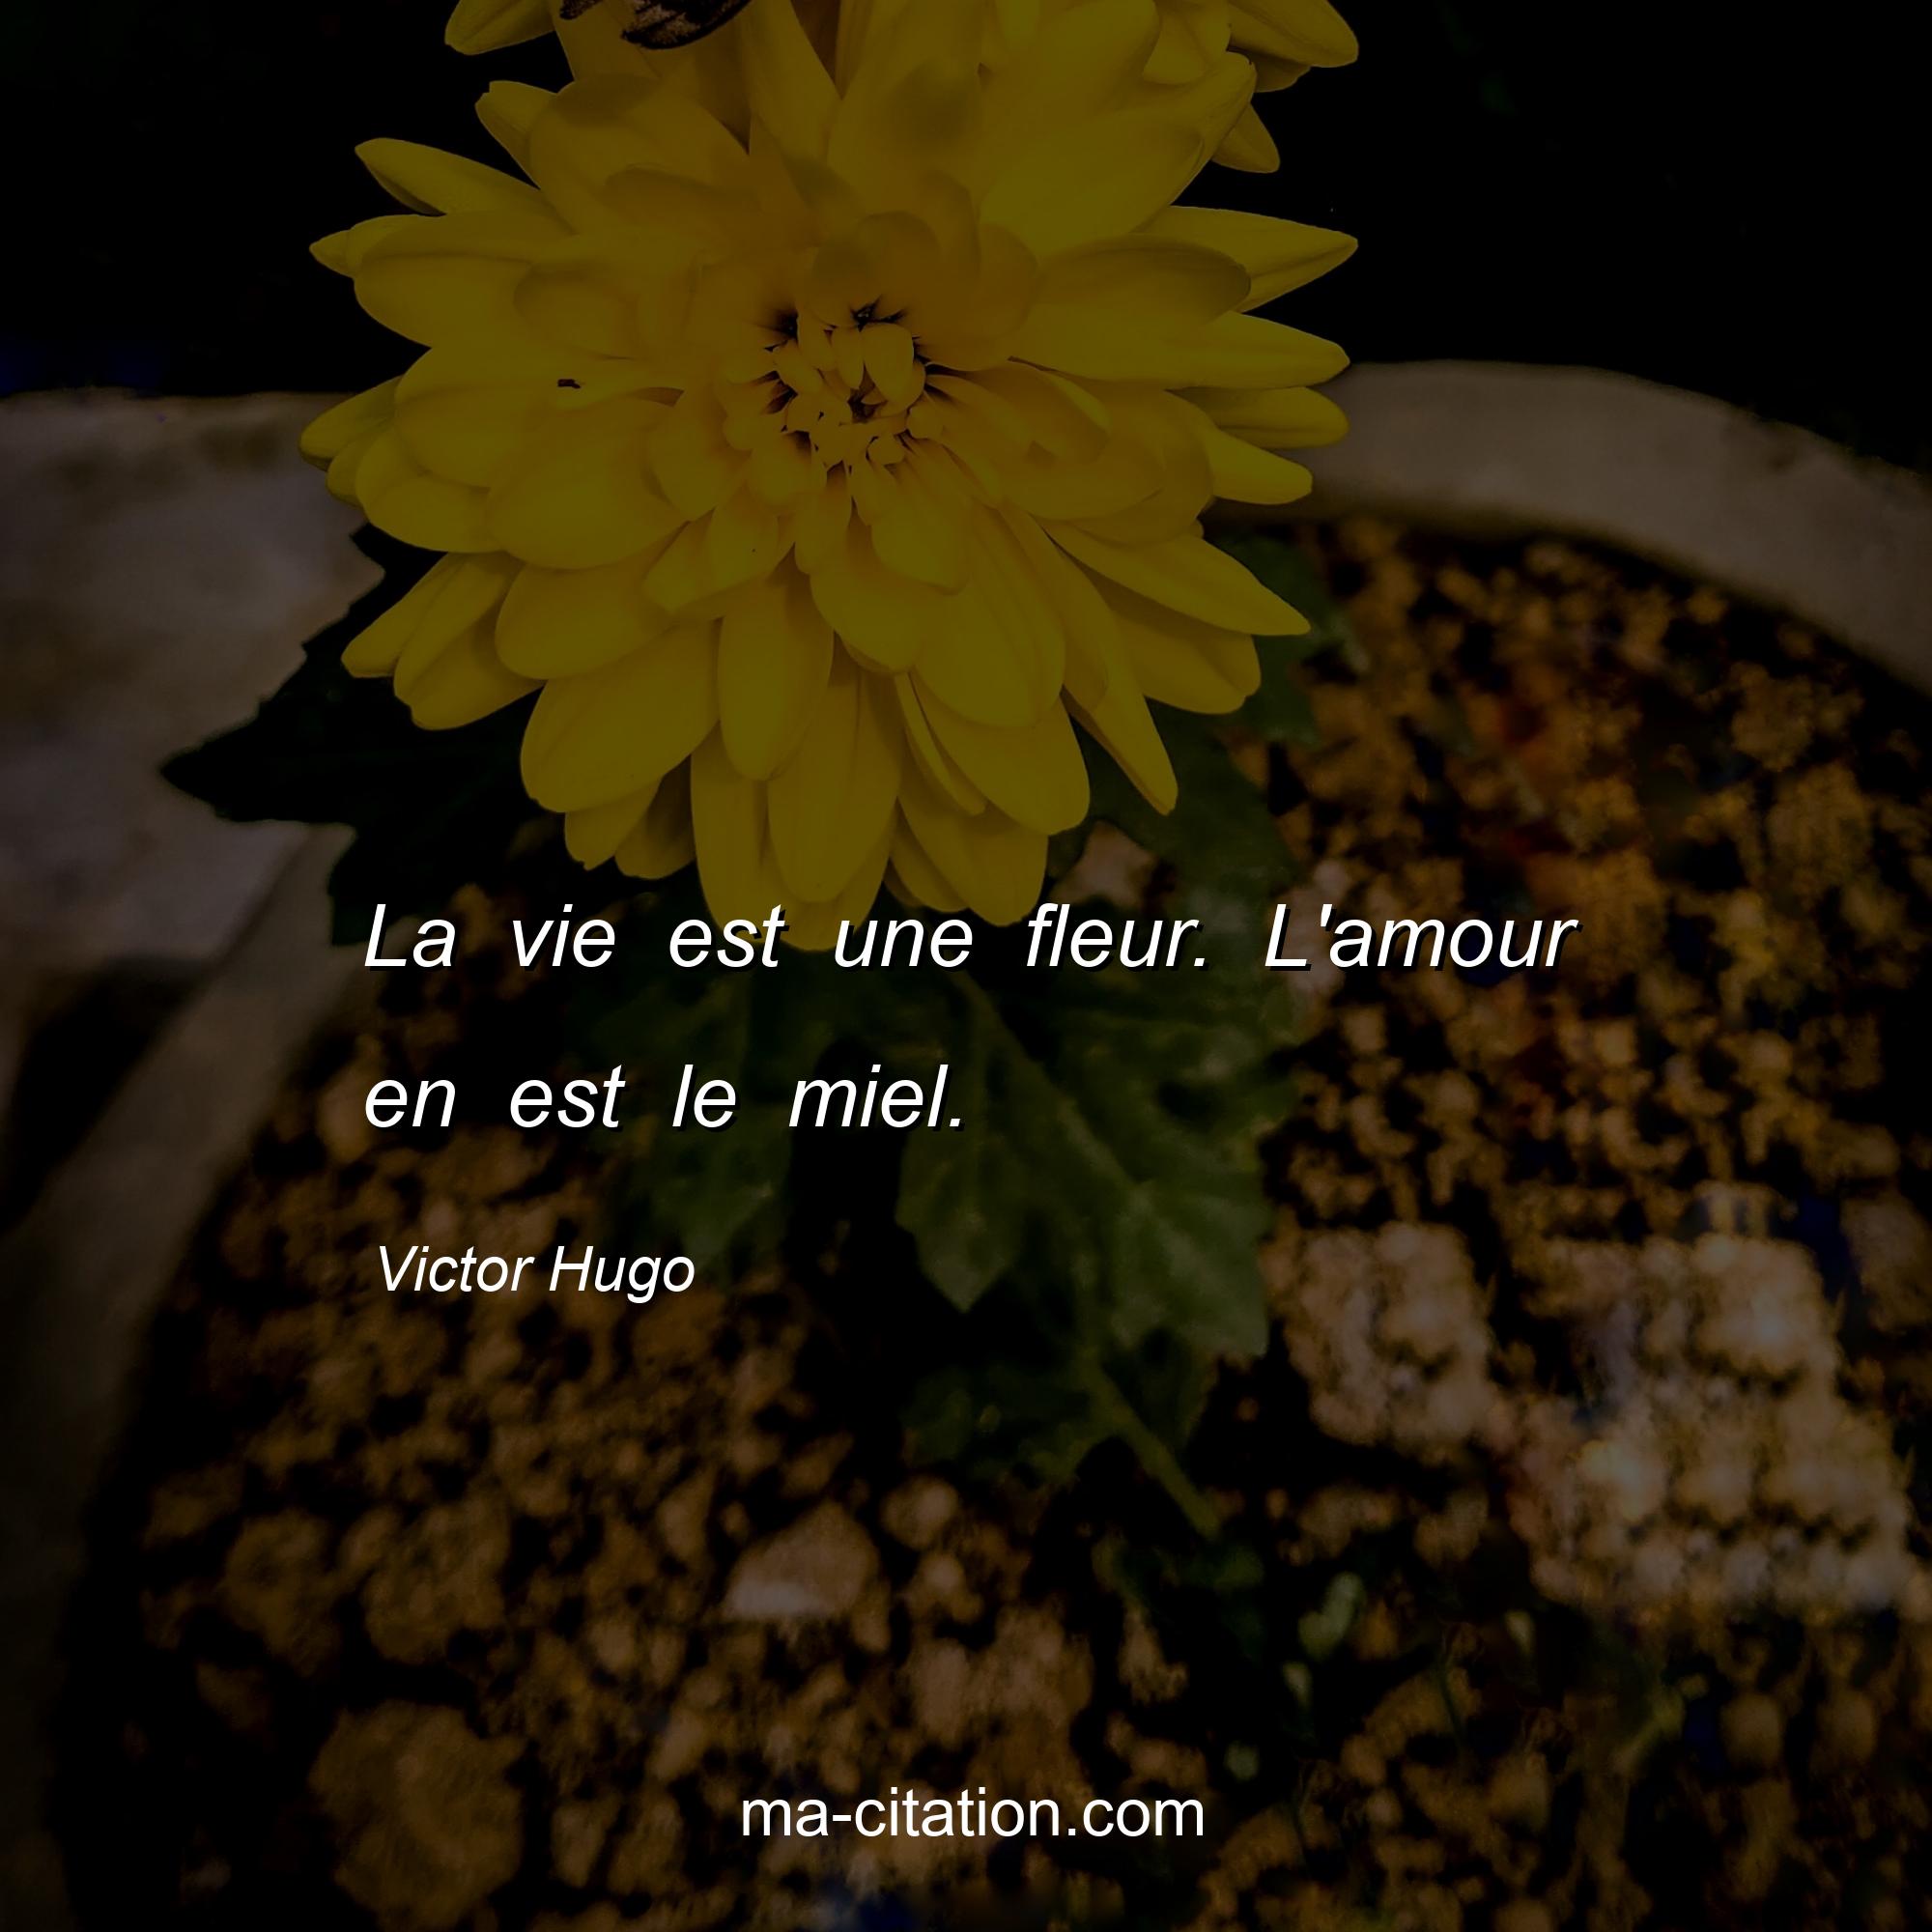 Victor Hugo : La vie est une fleur. L'amour en est le miel.